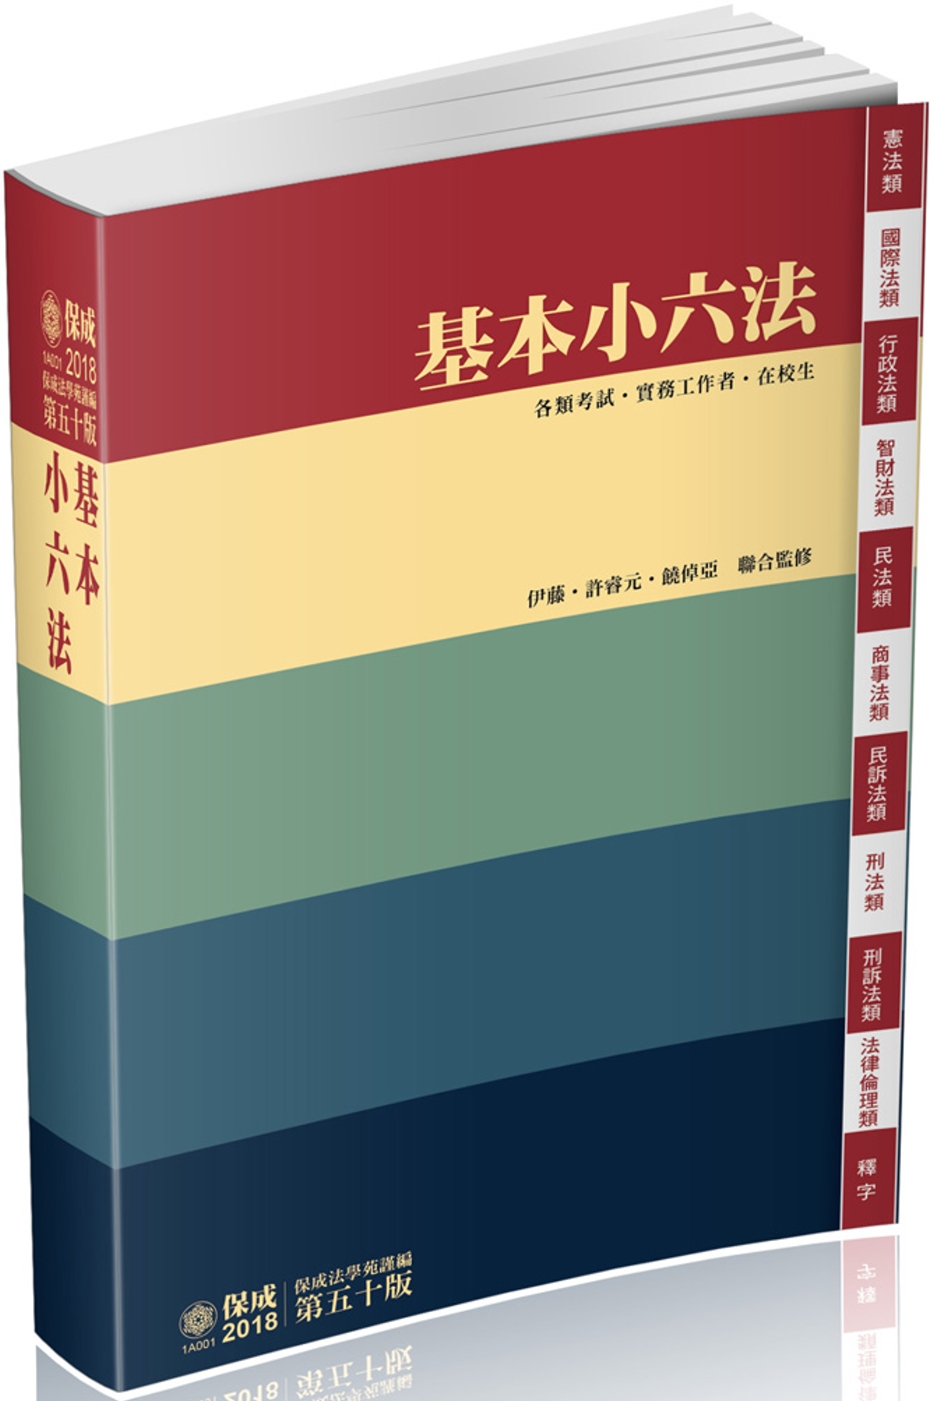 基本小六法-50版-2018法律工具書系列<保成>(五十版)